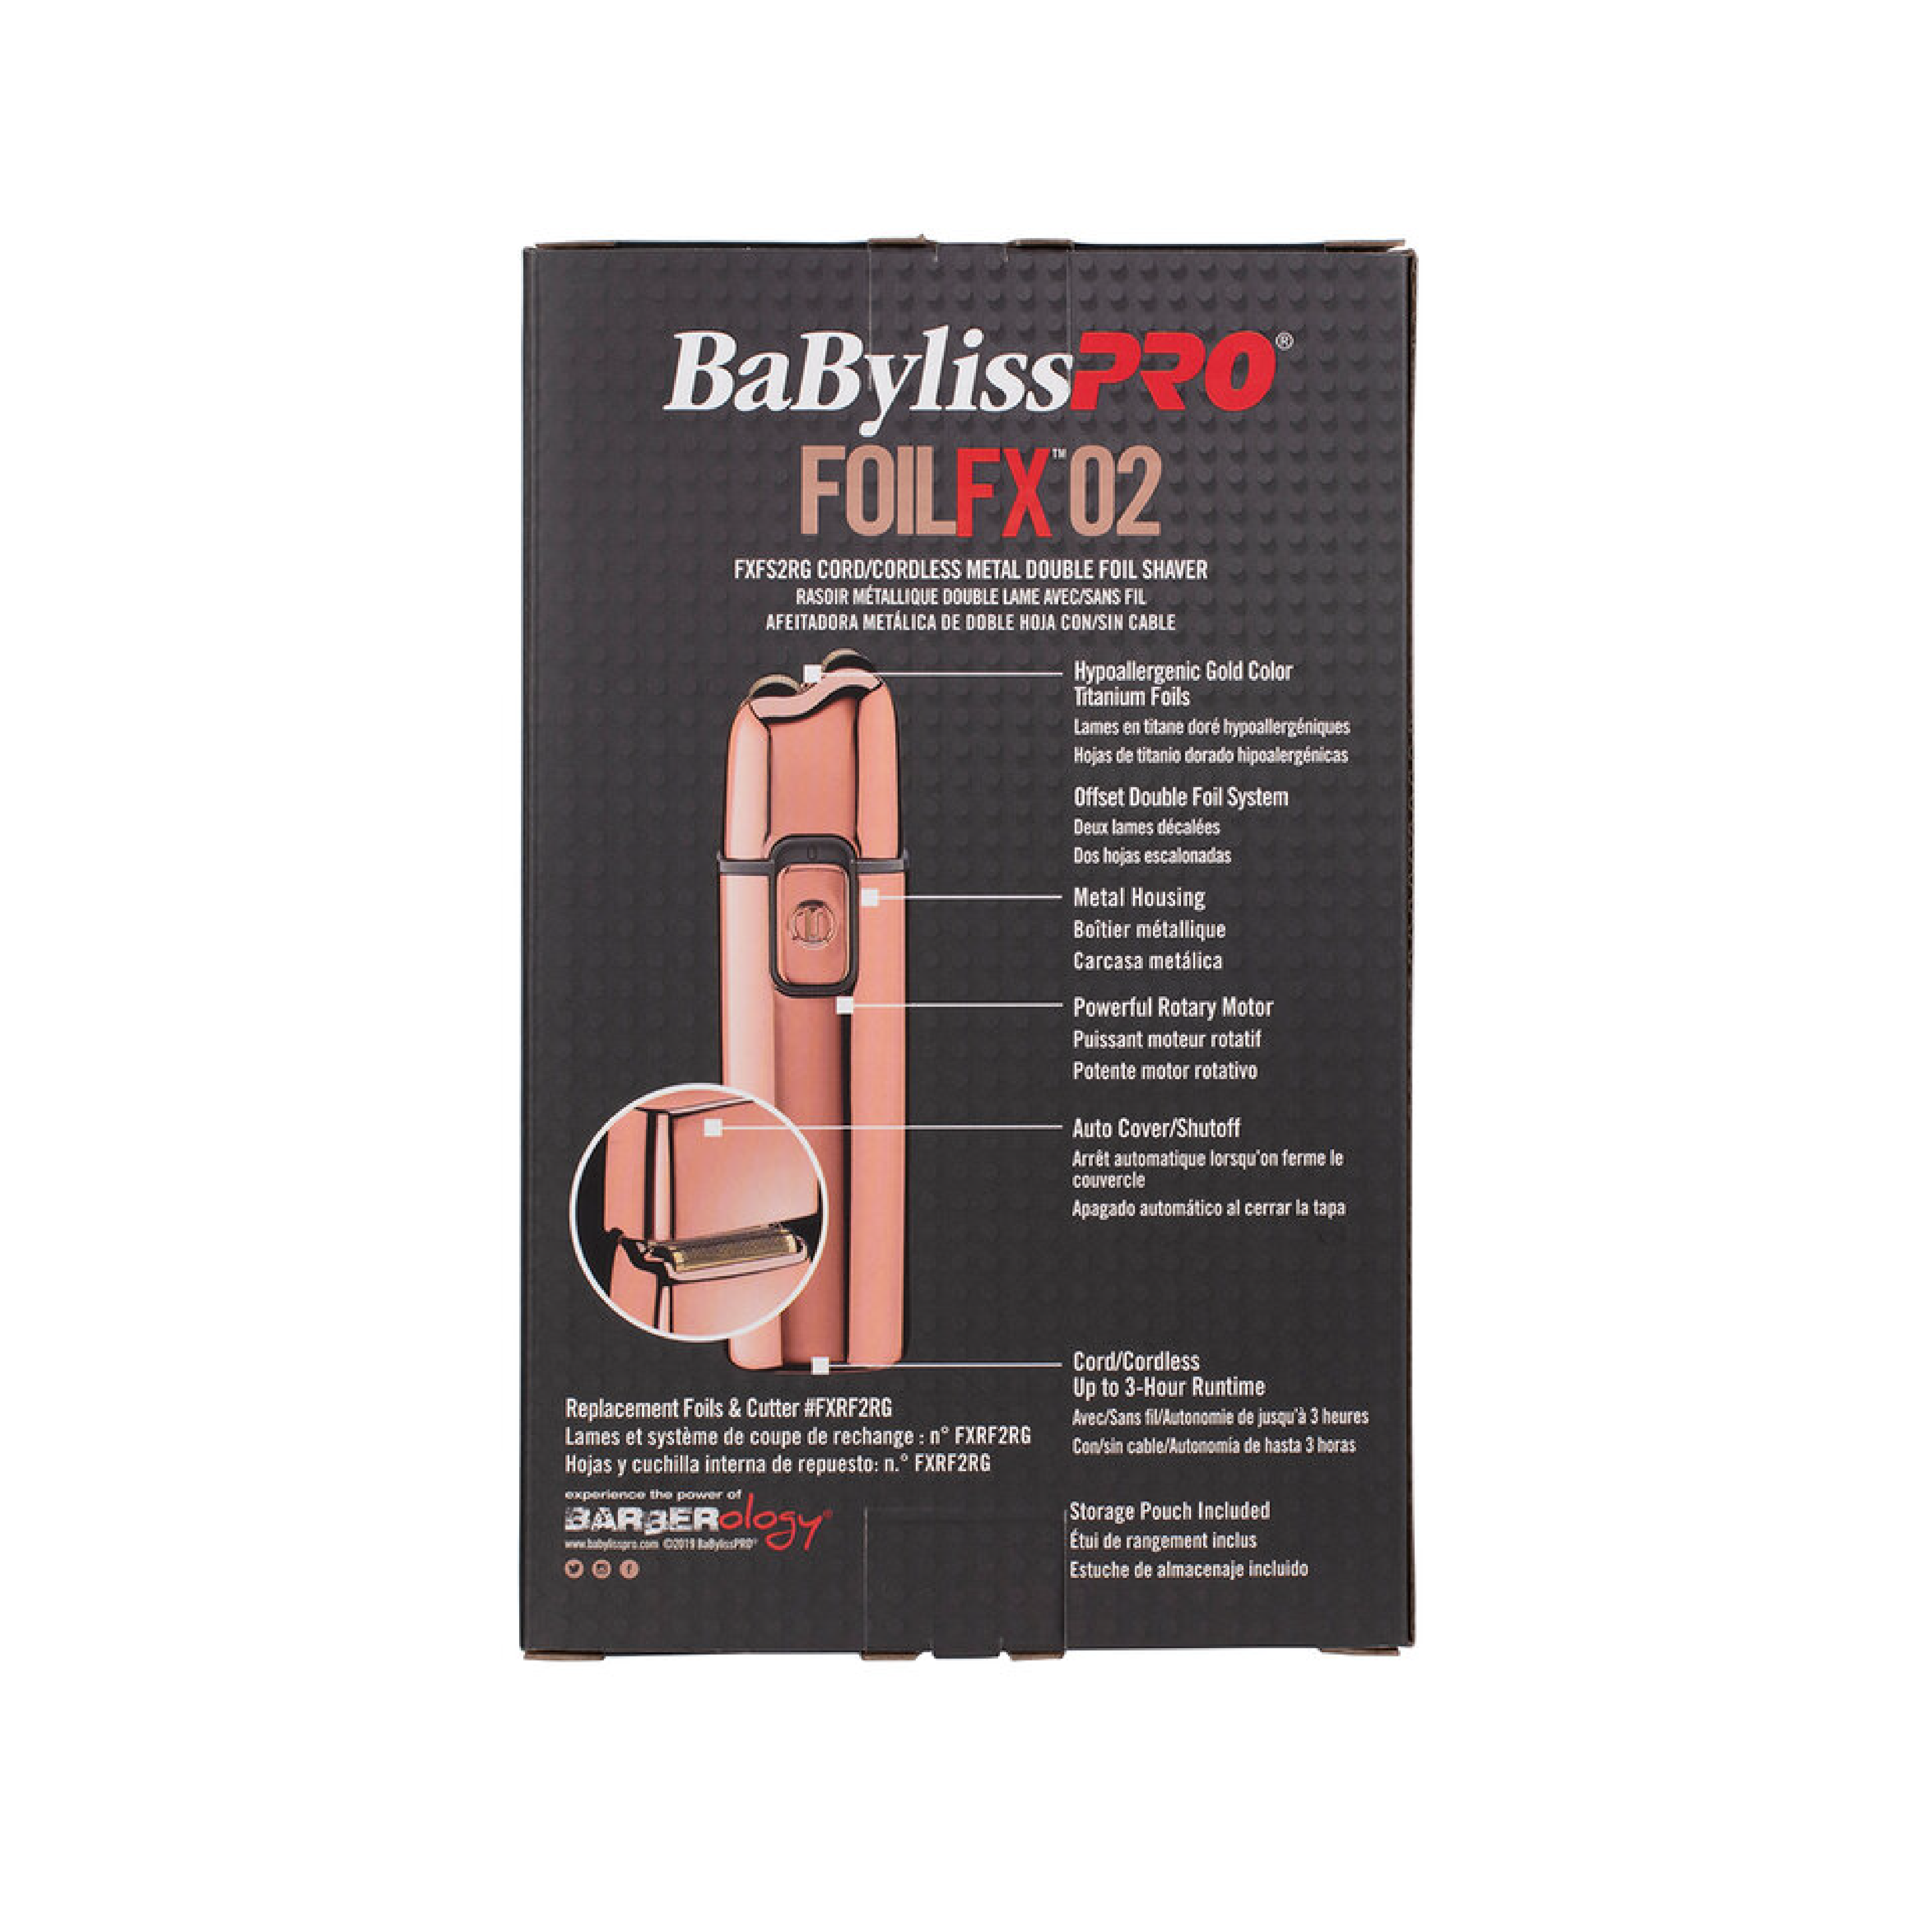 Babyliss Pro FoilFX02 Metal Double Foil Shaver - Rose Gold